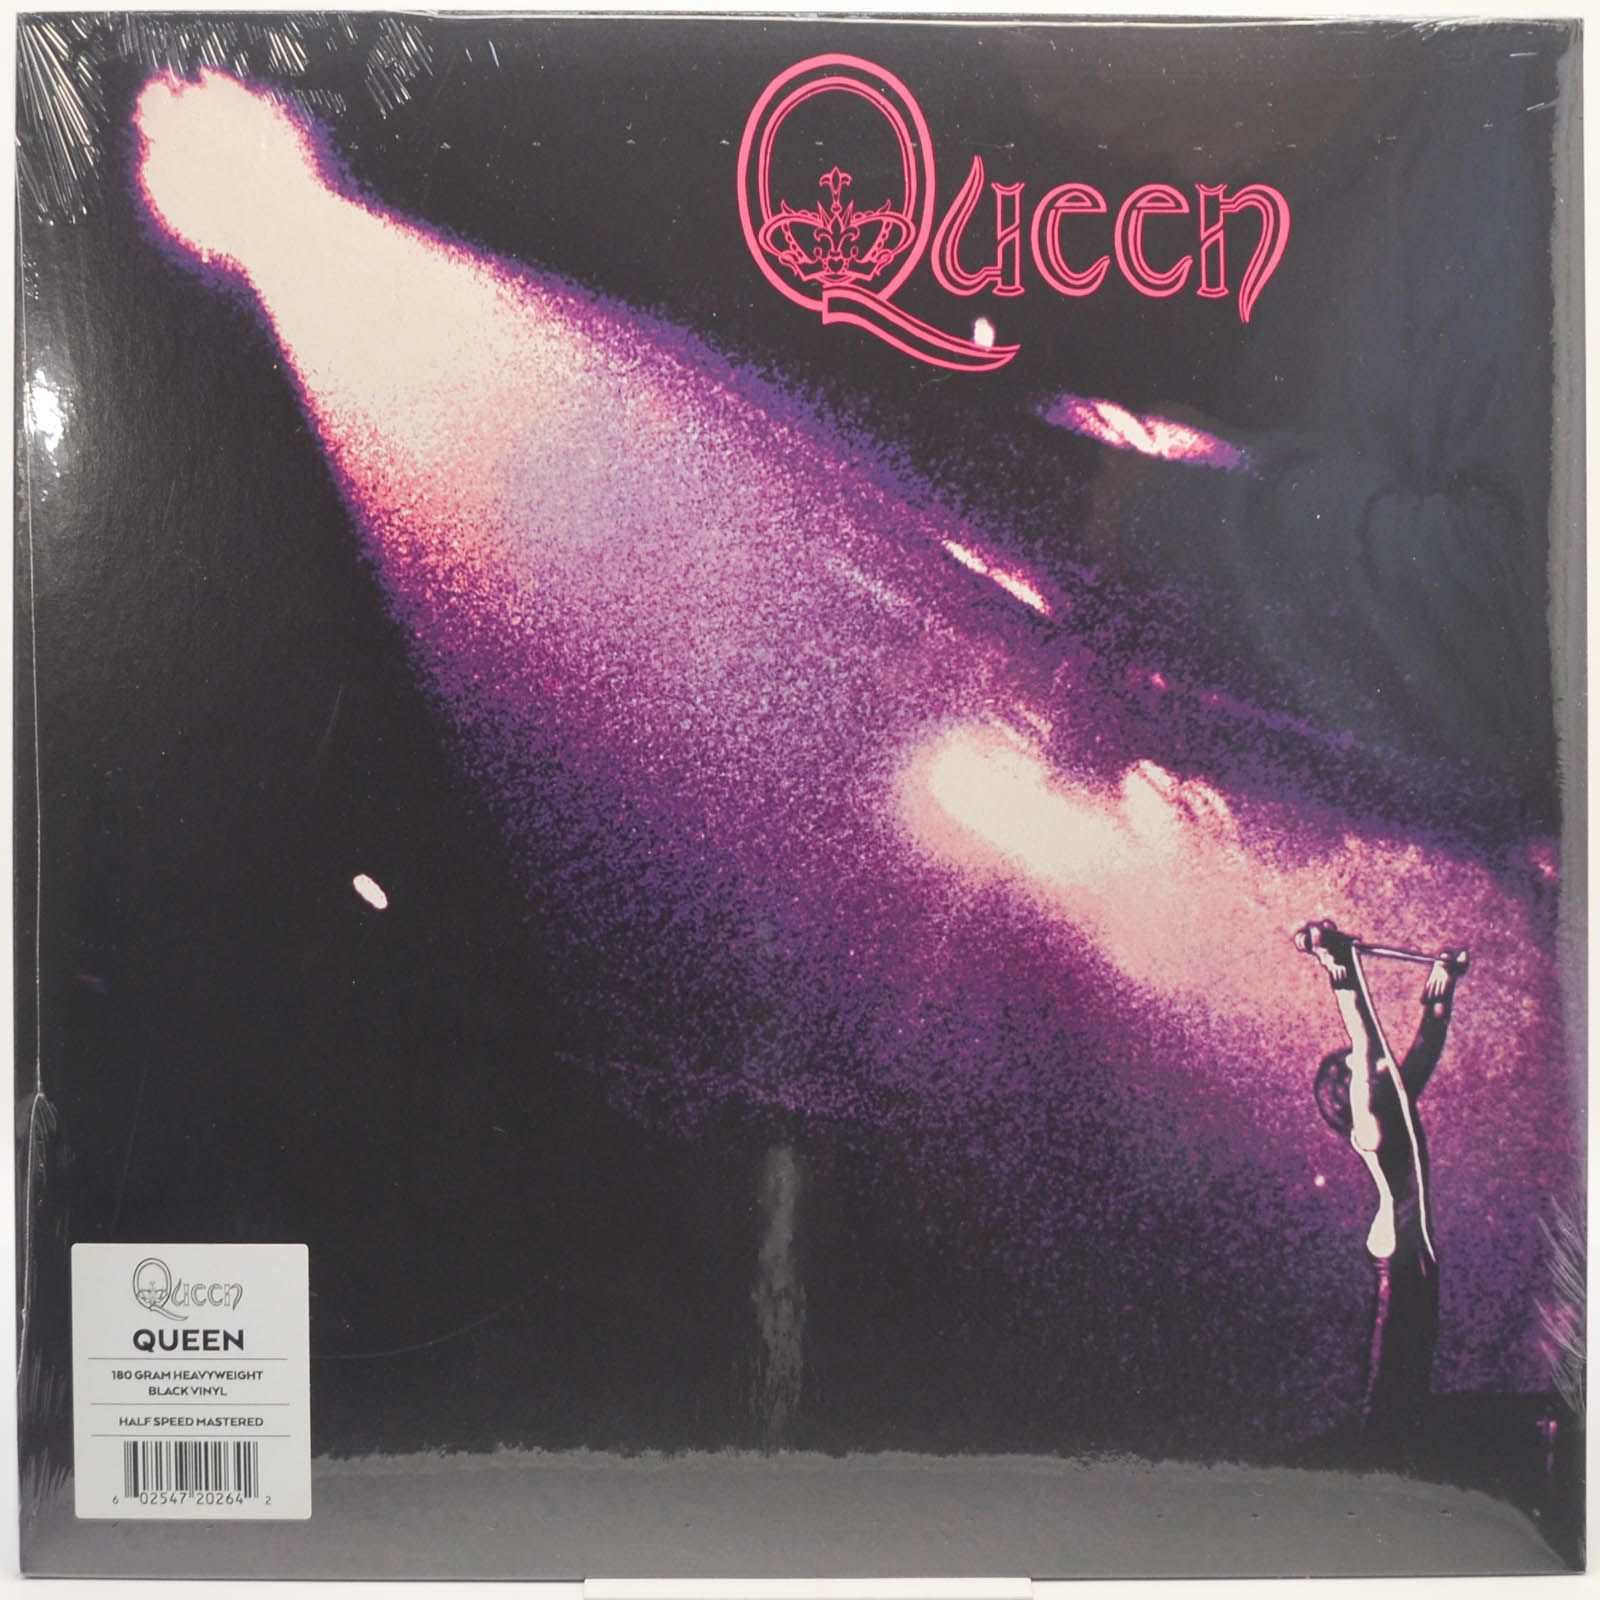 Queen — Queen, 1973